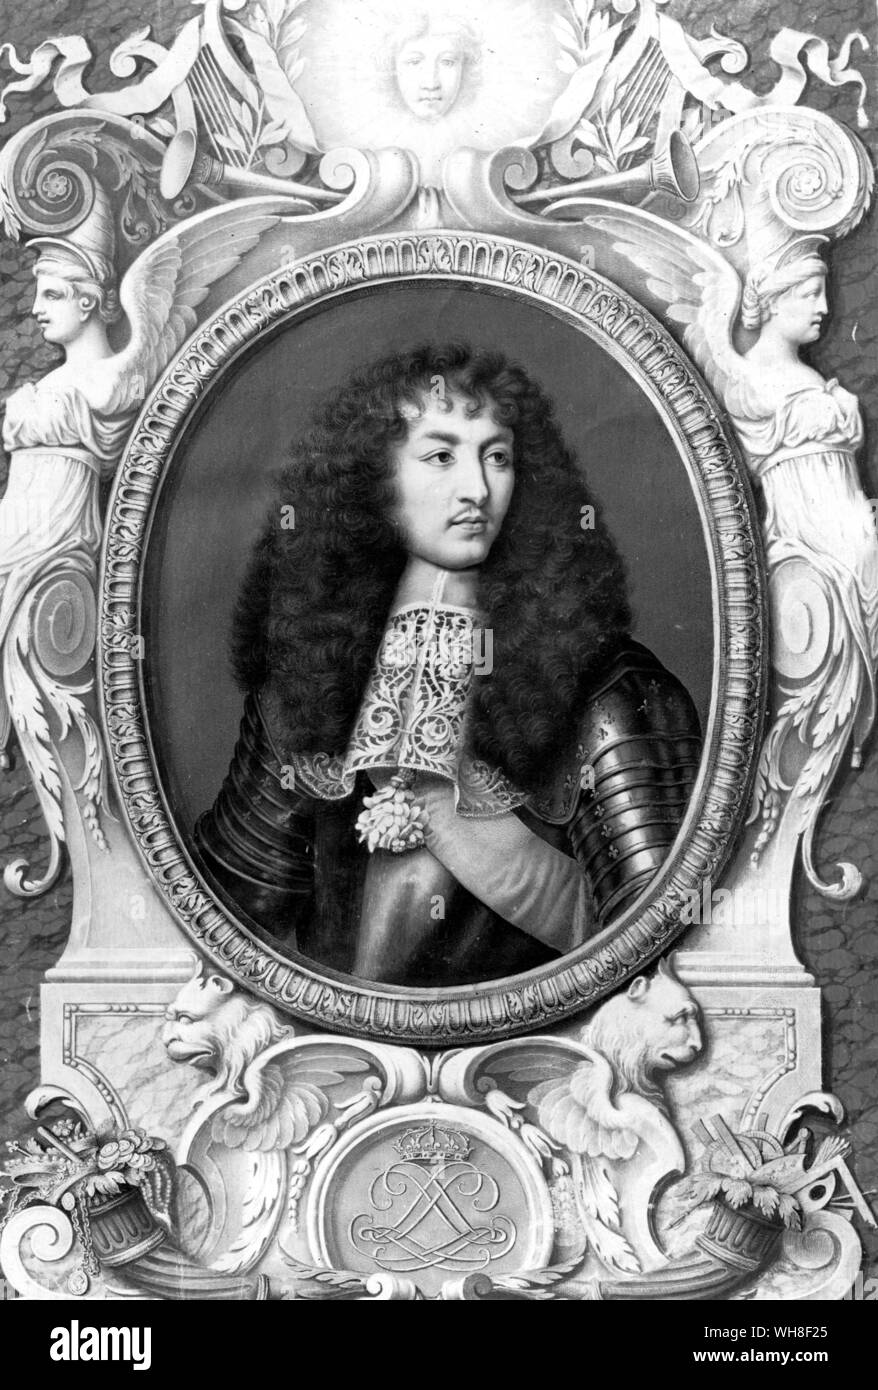 Louis XIV, roi de France, le Roi Soleil, (1638-1715), qui régna de 1643-1715. Portrait par Robert Nic. Son règne en France a été la plus longue de l'histoire européenne et a coïncidé avec l'apogée de la monarchie Française. Banque D'Images